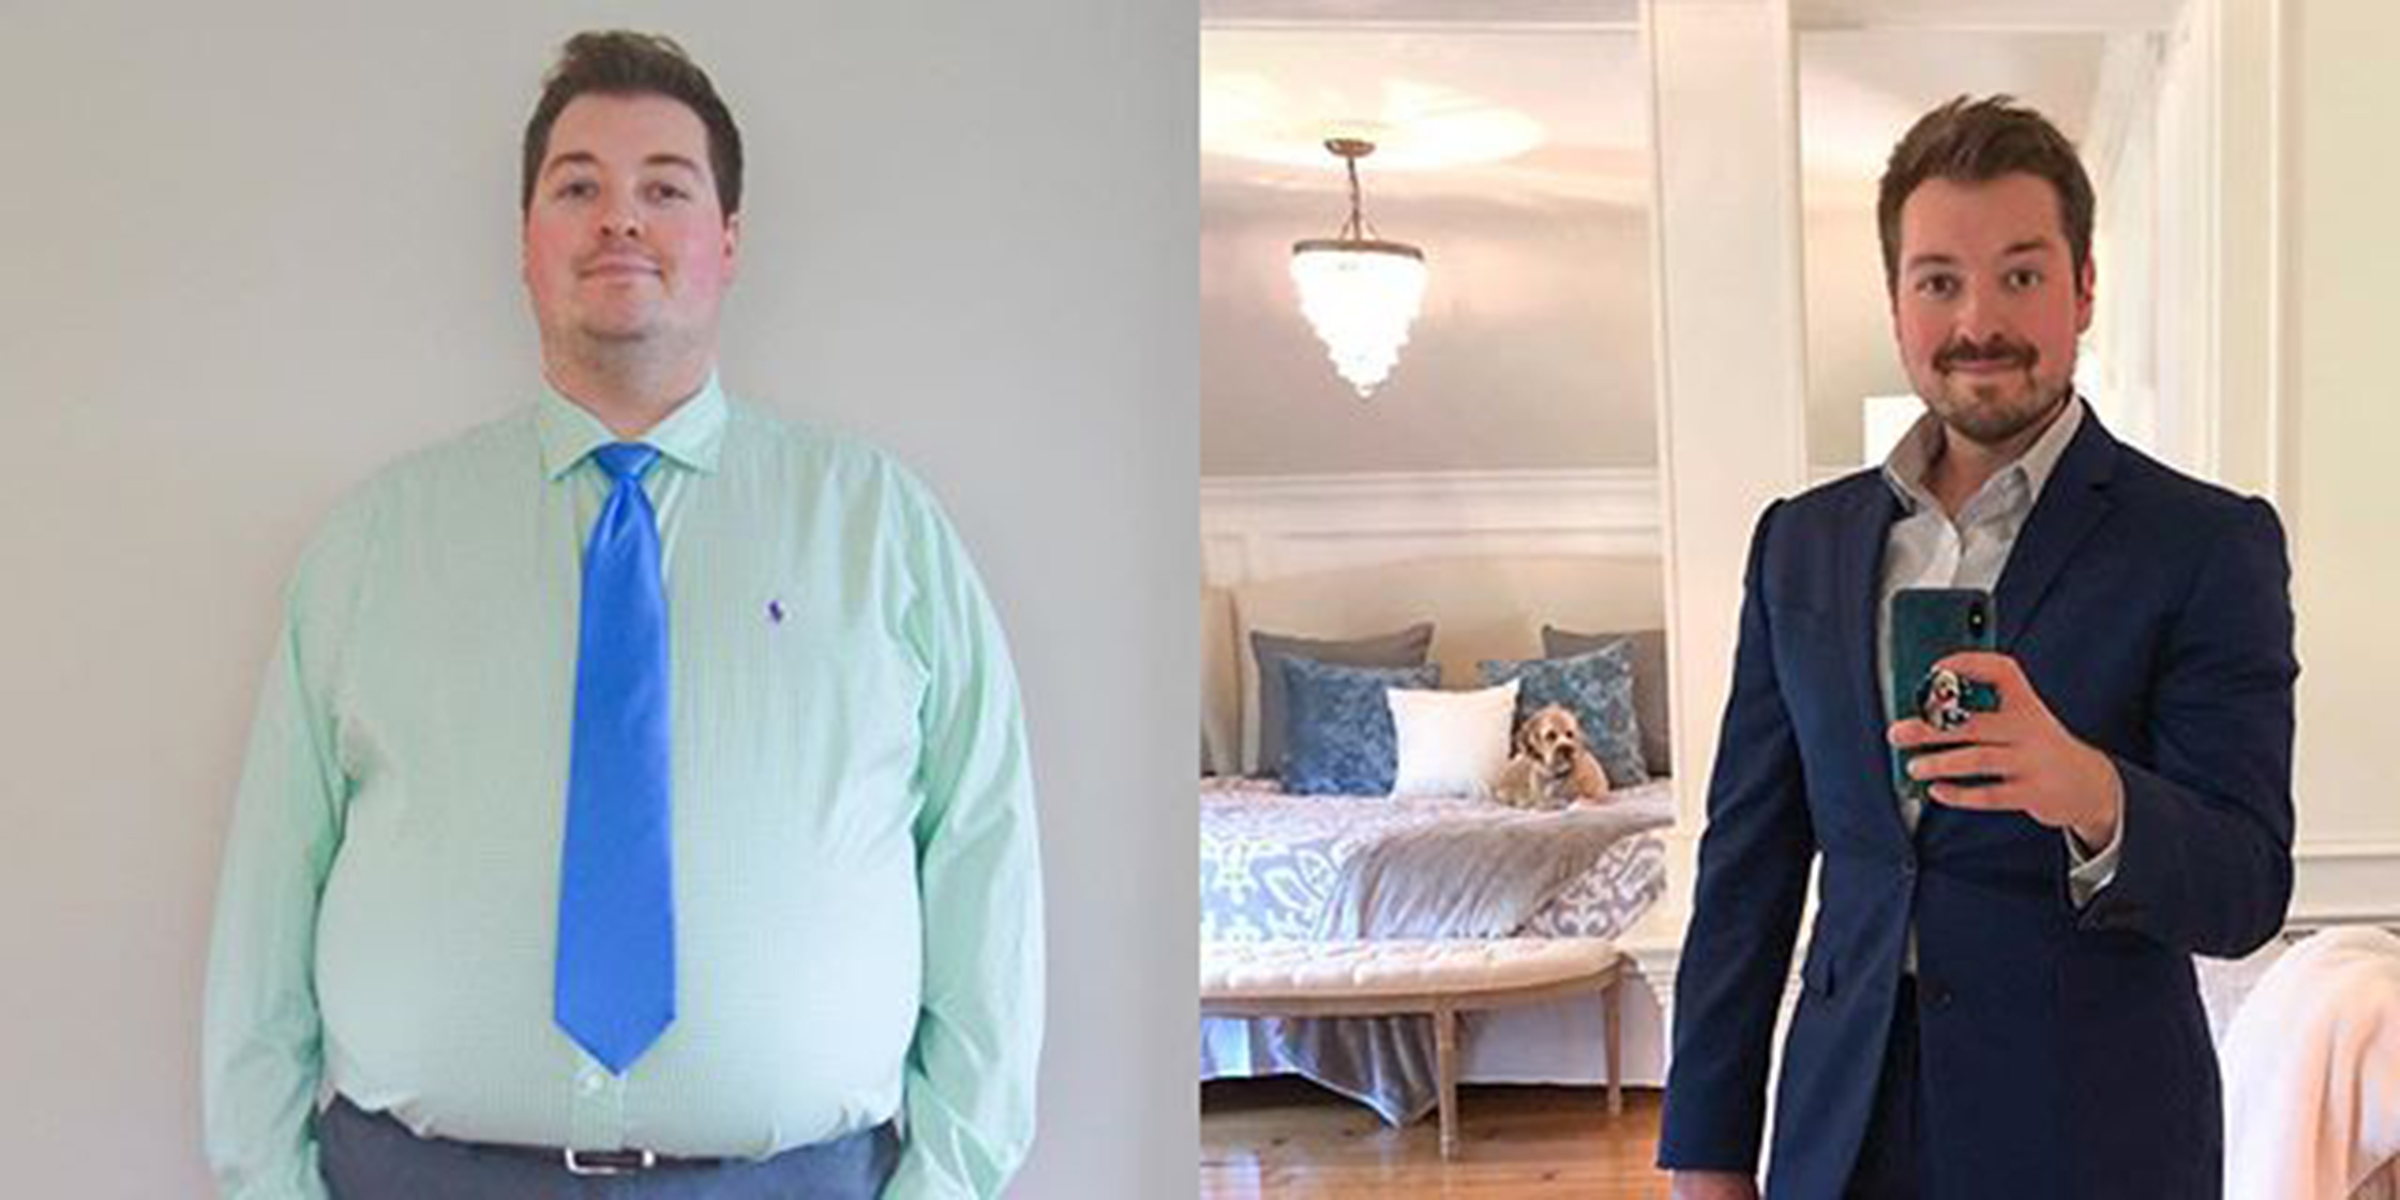 Bajó 56 kilos y cambió su vida: una dieta y una historia conmovedora